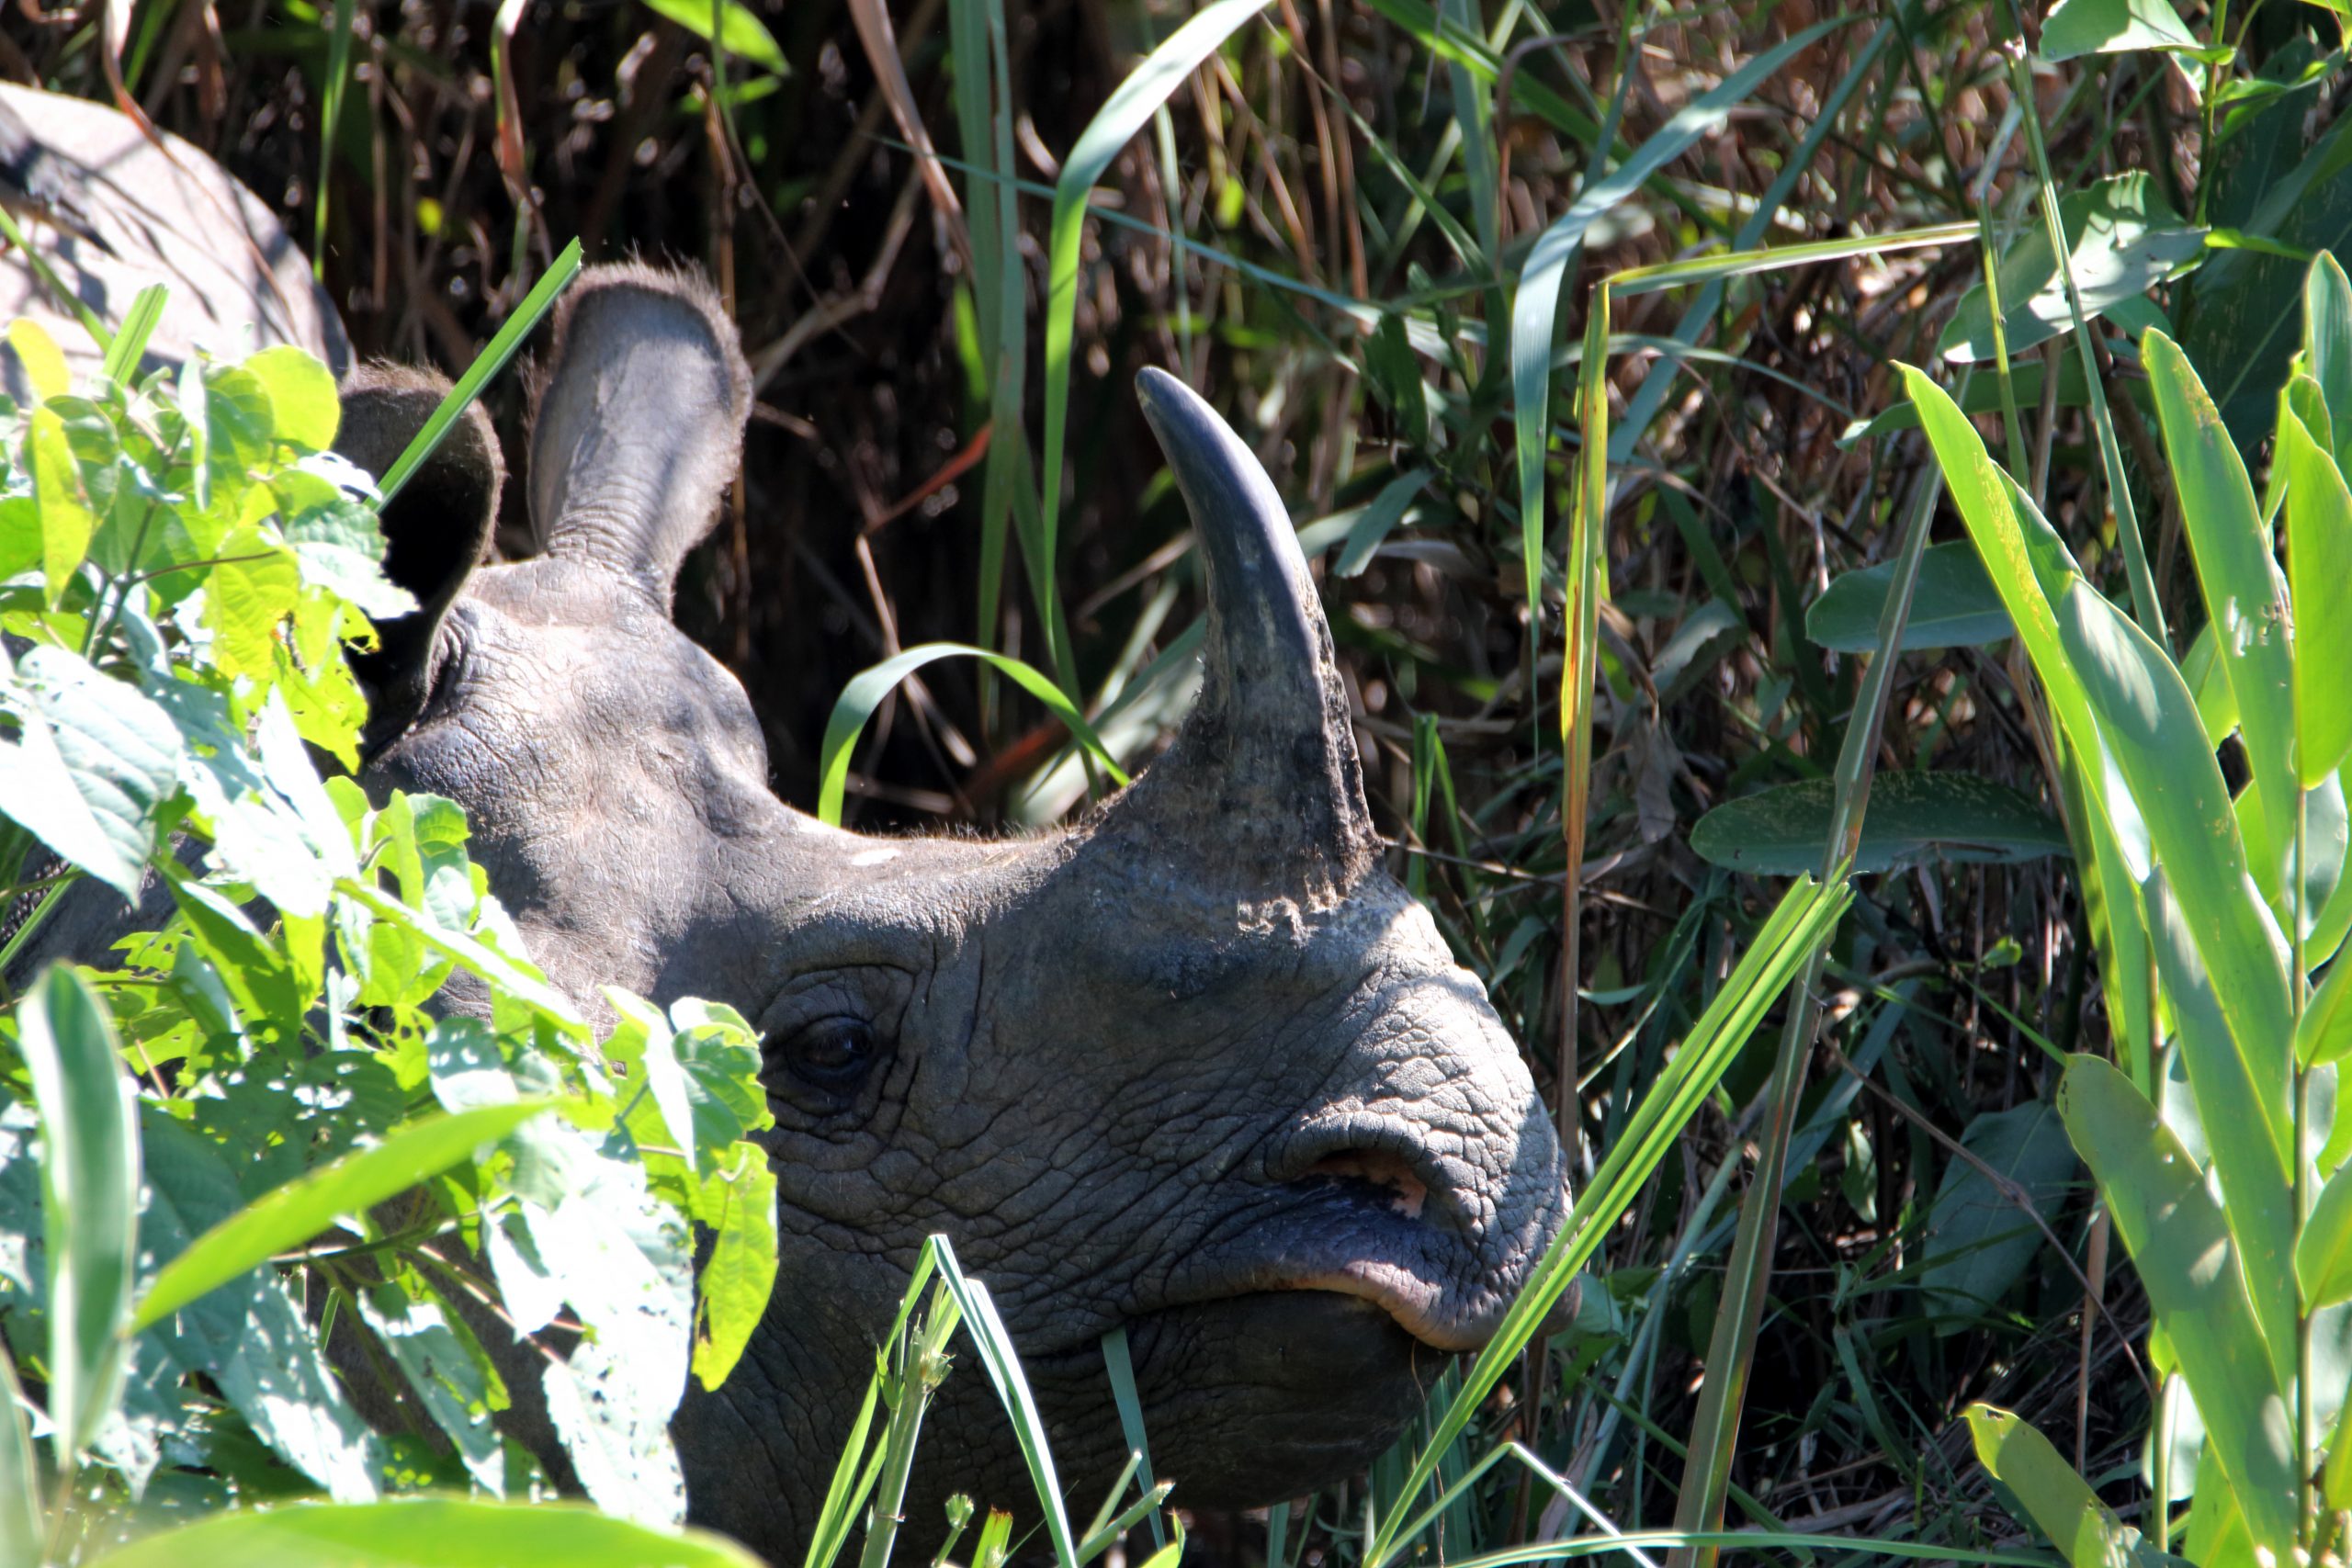 A rhino in a jungle